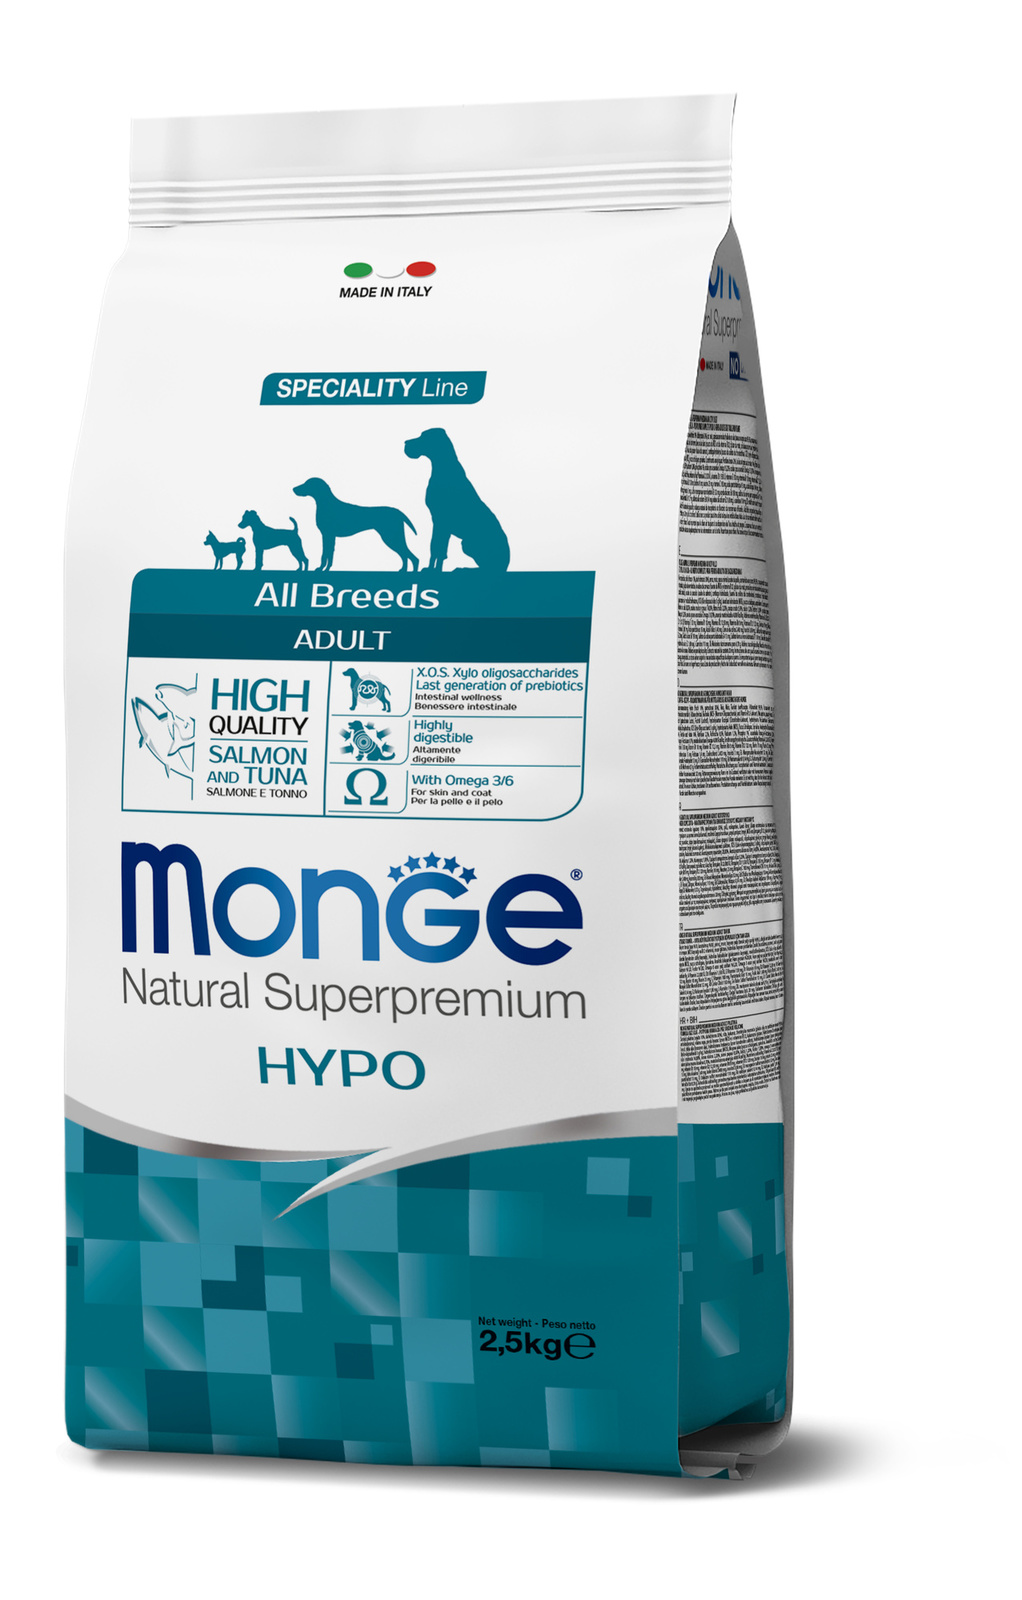 гипоаллергенный корм для собак всех пород, лосось с тунцом (12 кг) Monge гипоаллергенный корм для собак всех пород, лосось с тунцом (12 кг) - фото 1